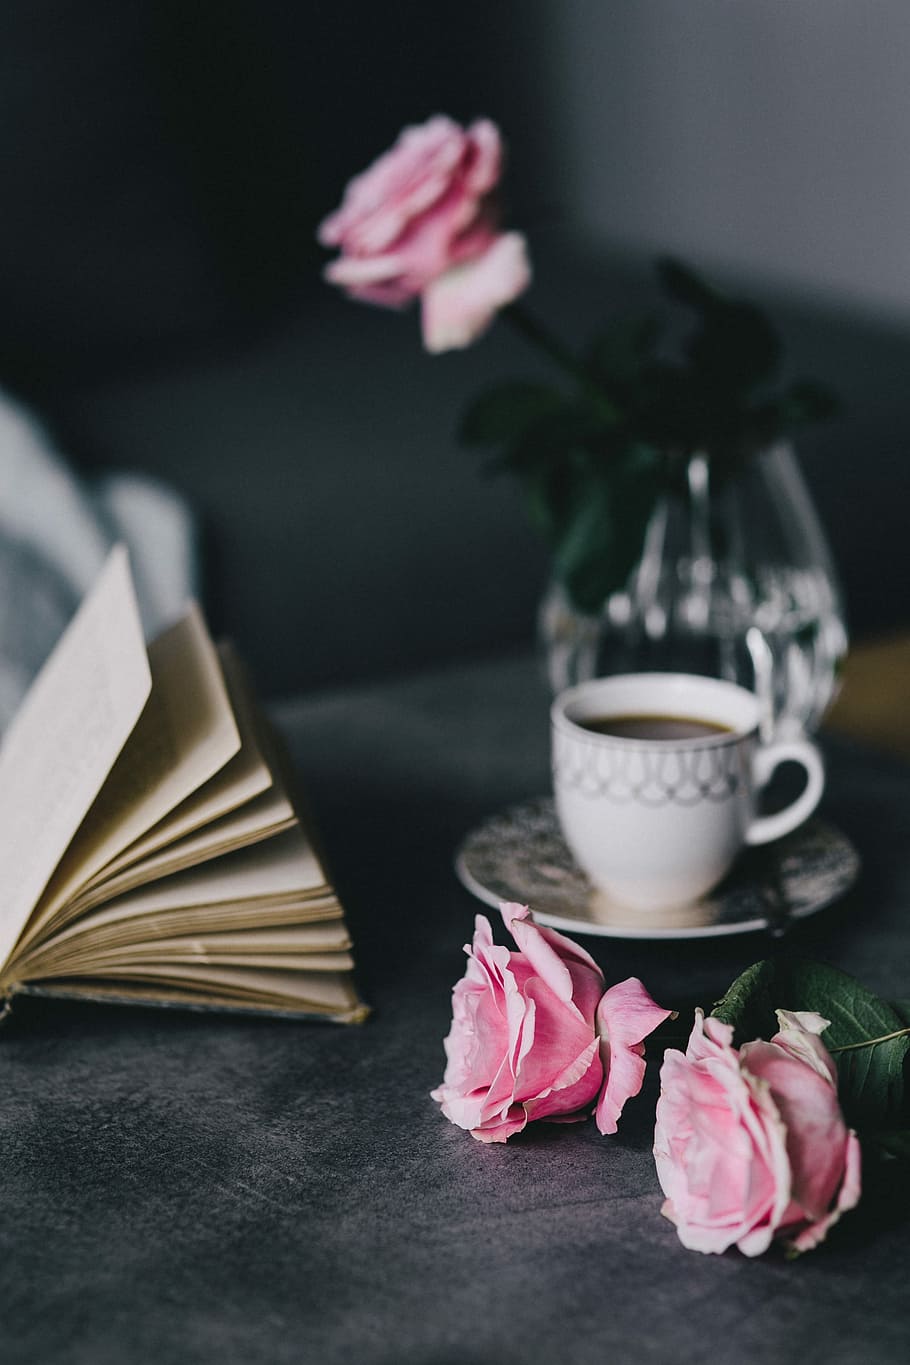 encantador, rosas, libro, café, rosa, interior, descanso, relajarse, esencial, lectura